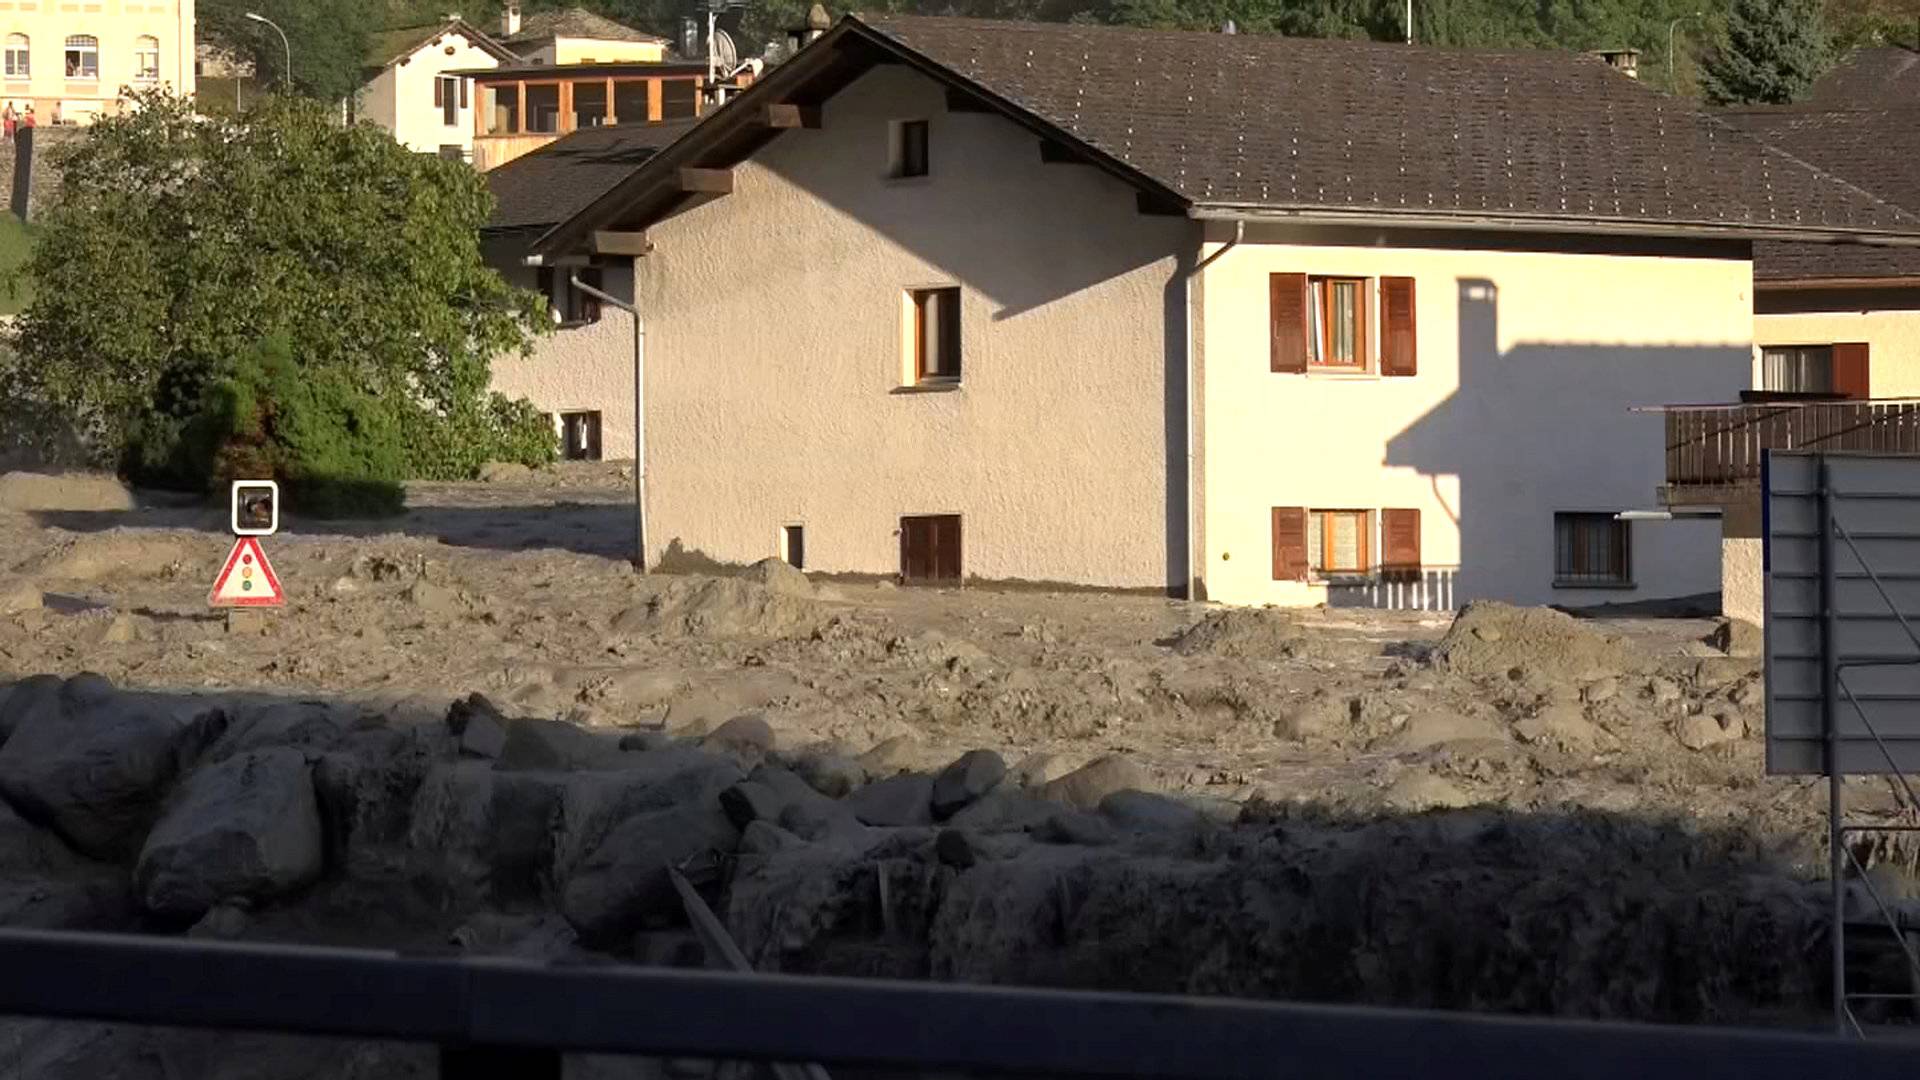 Still image taken from video shows the remote village Bondo in Switzerland